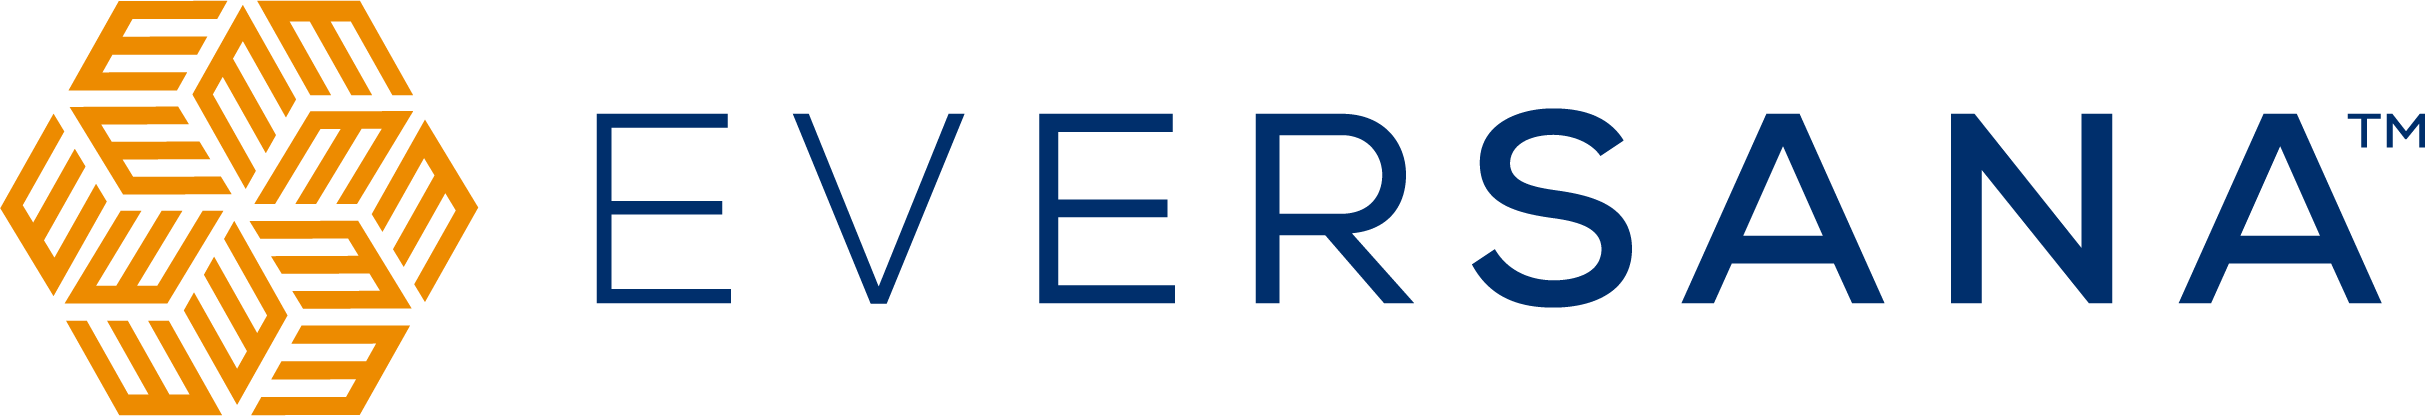 Eversana_Logo_H_RGB